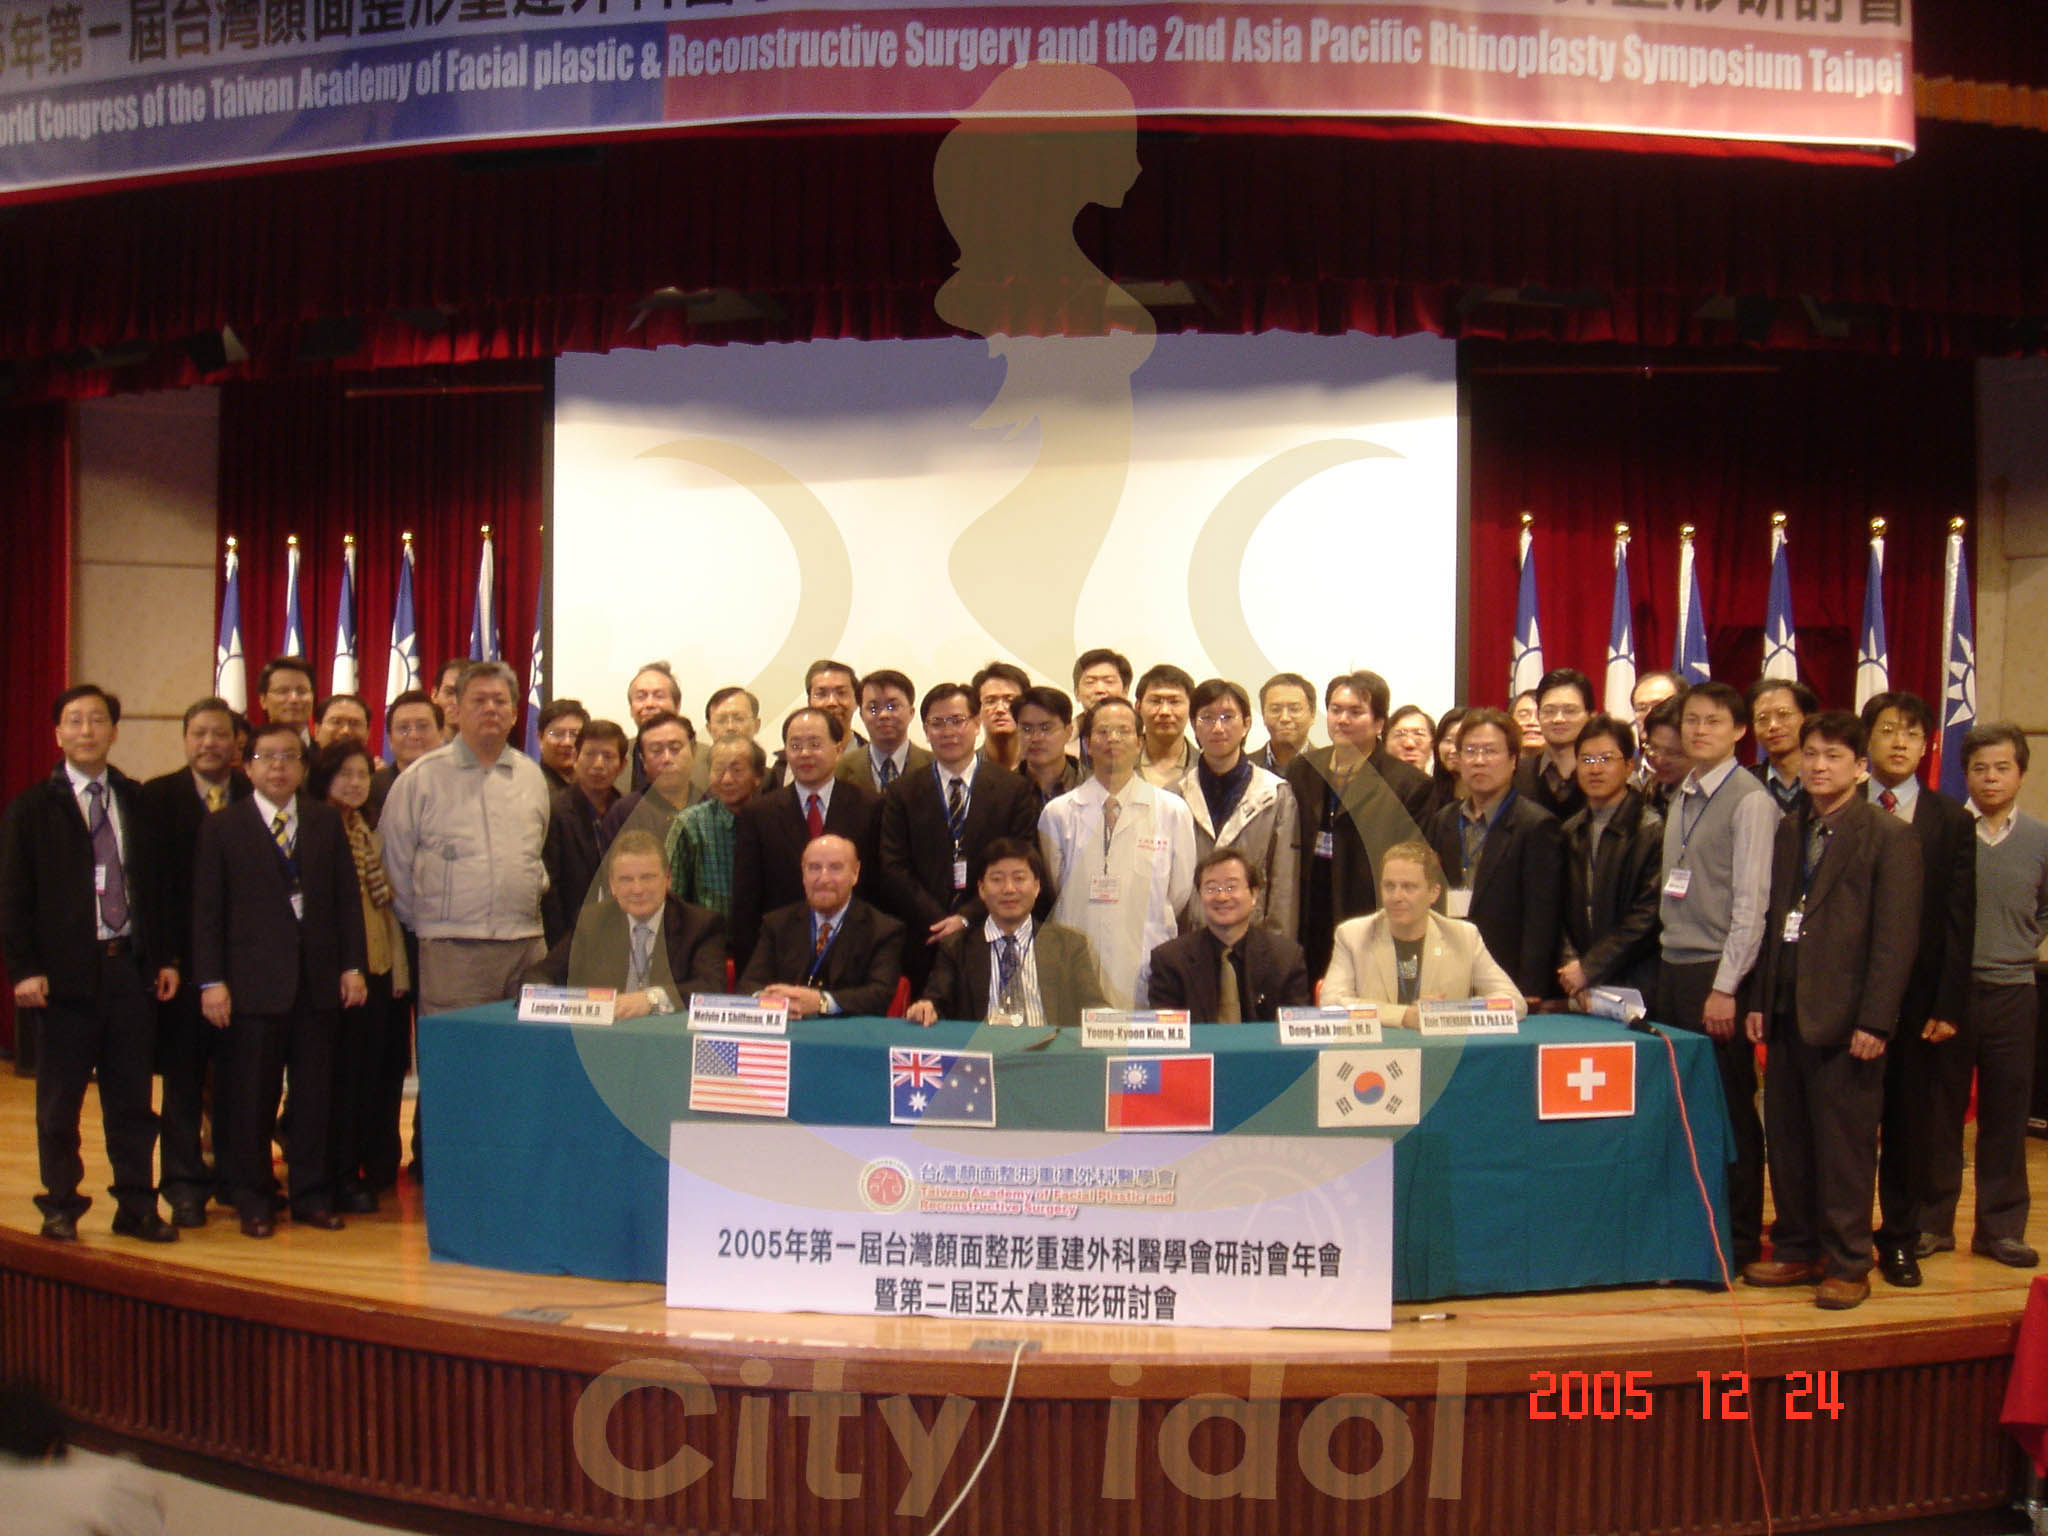 2005-12-24 第一屆台灣顏面整形重建外科醫學會研討會大會合照